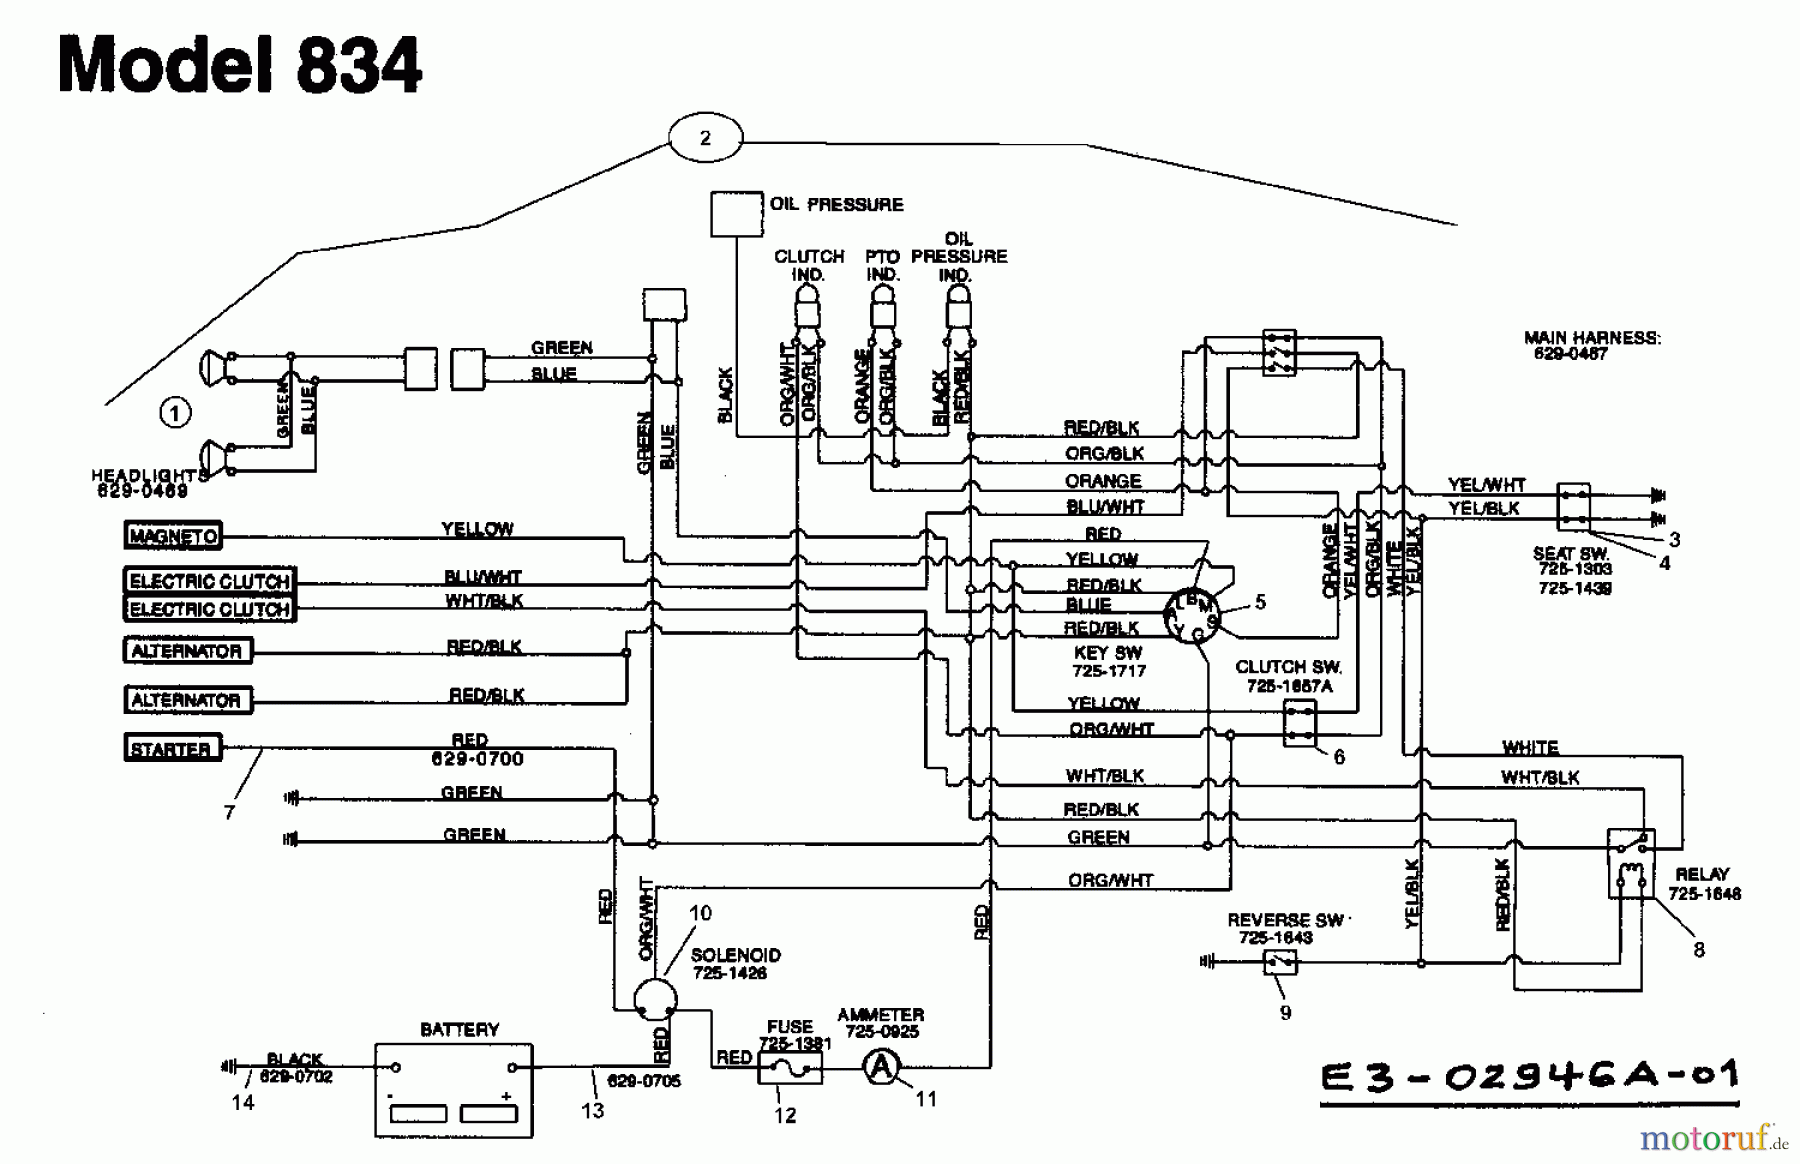  Yard-Man Garden tractors HH 8200 14AU834H643  (1998) Wiring diagram